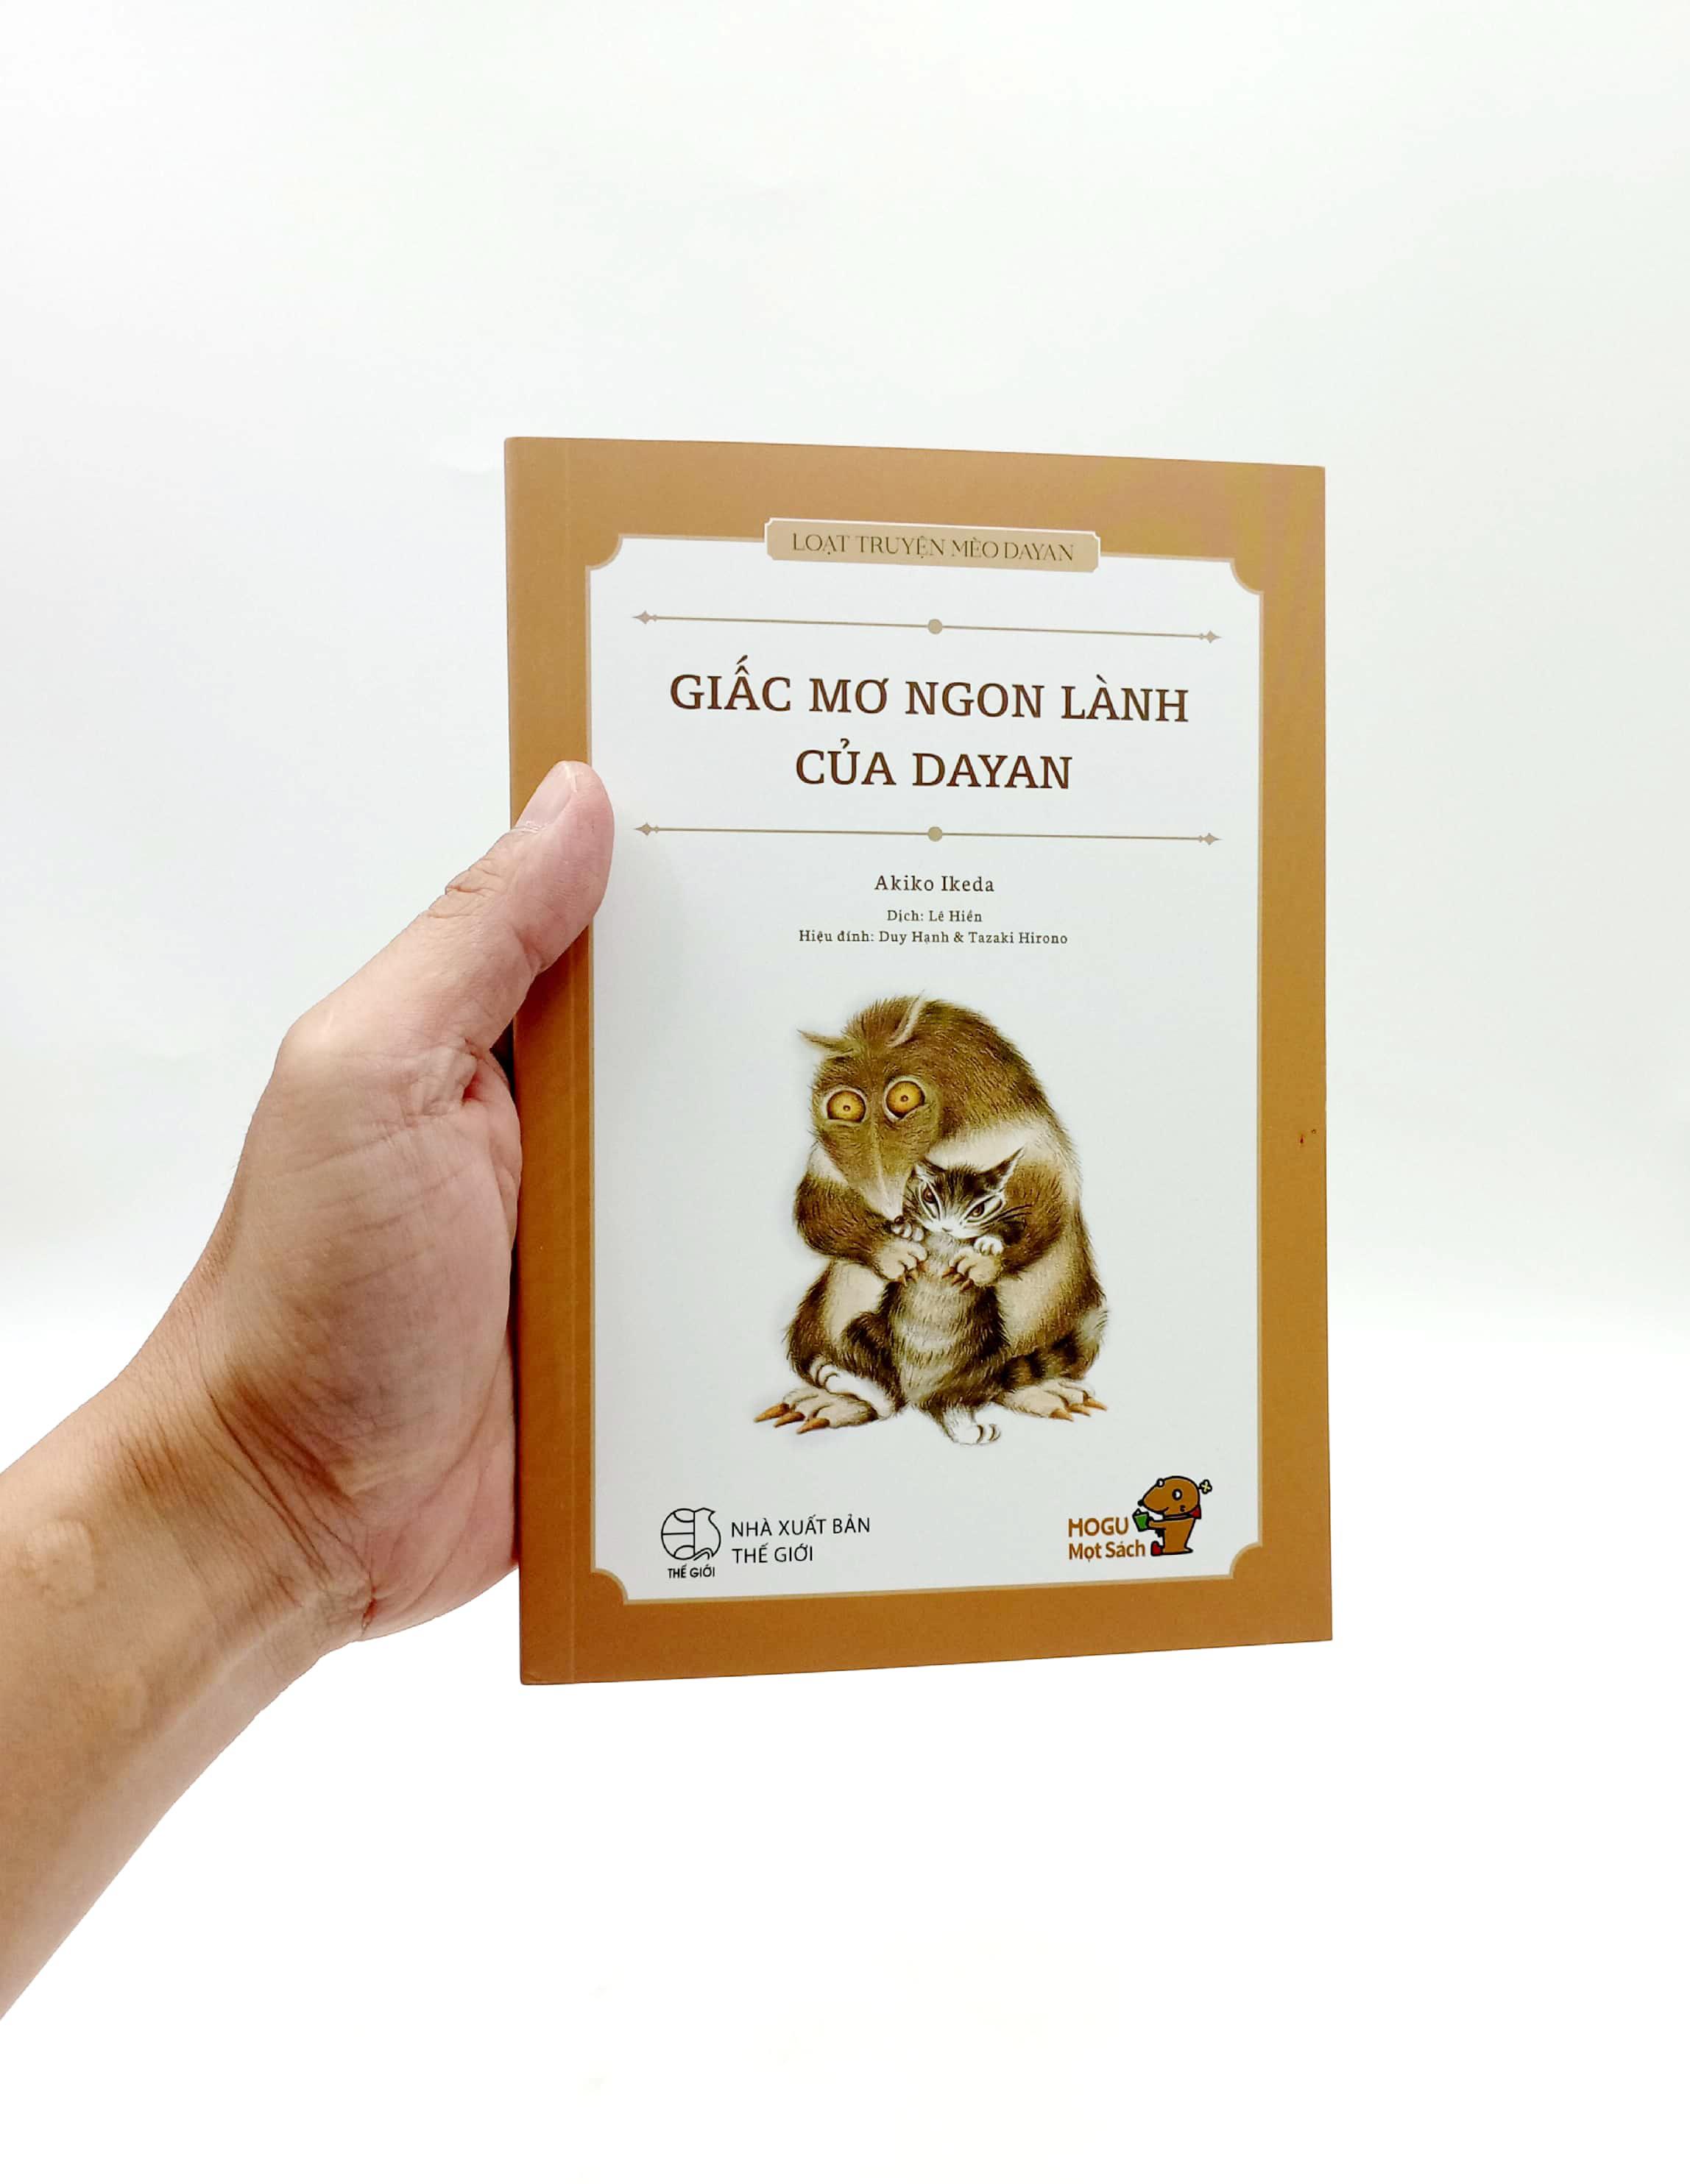 Mogu Mọt Sách - Loạt Truyện Mèo Dayan - Giấc Mơ Ngon Lành Của Dayan